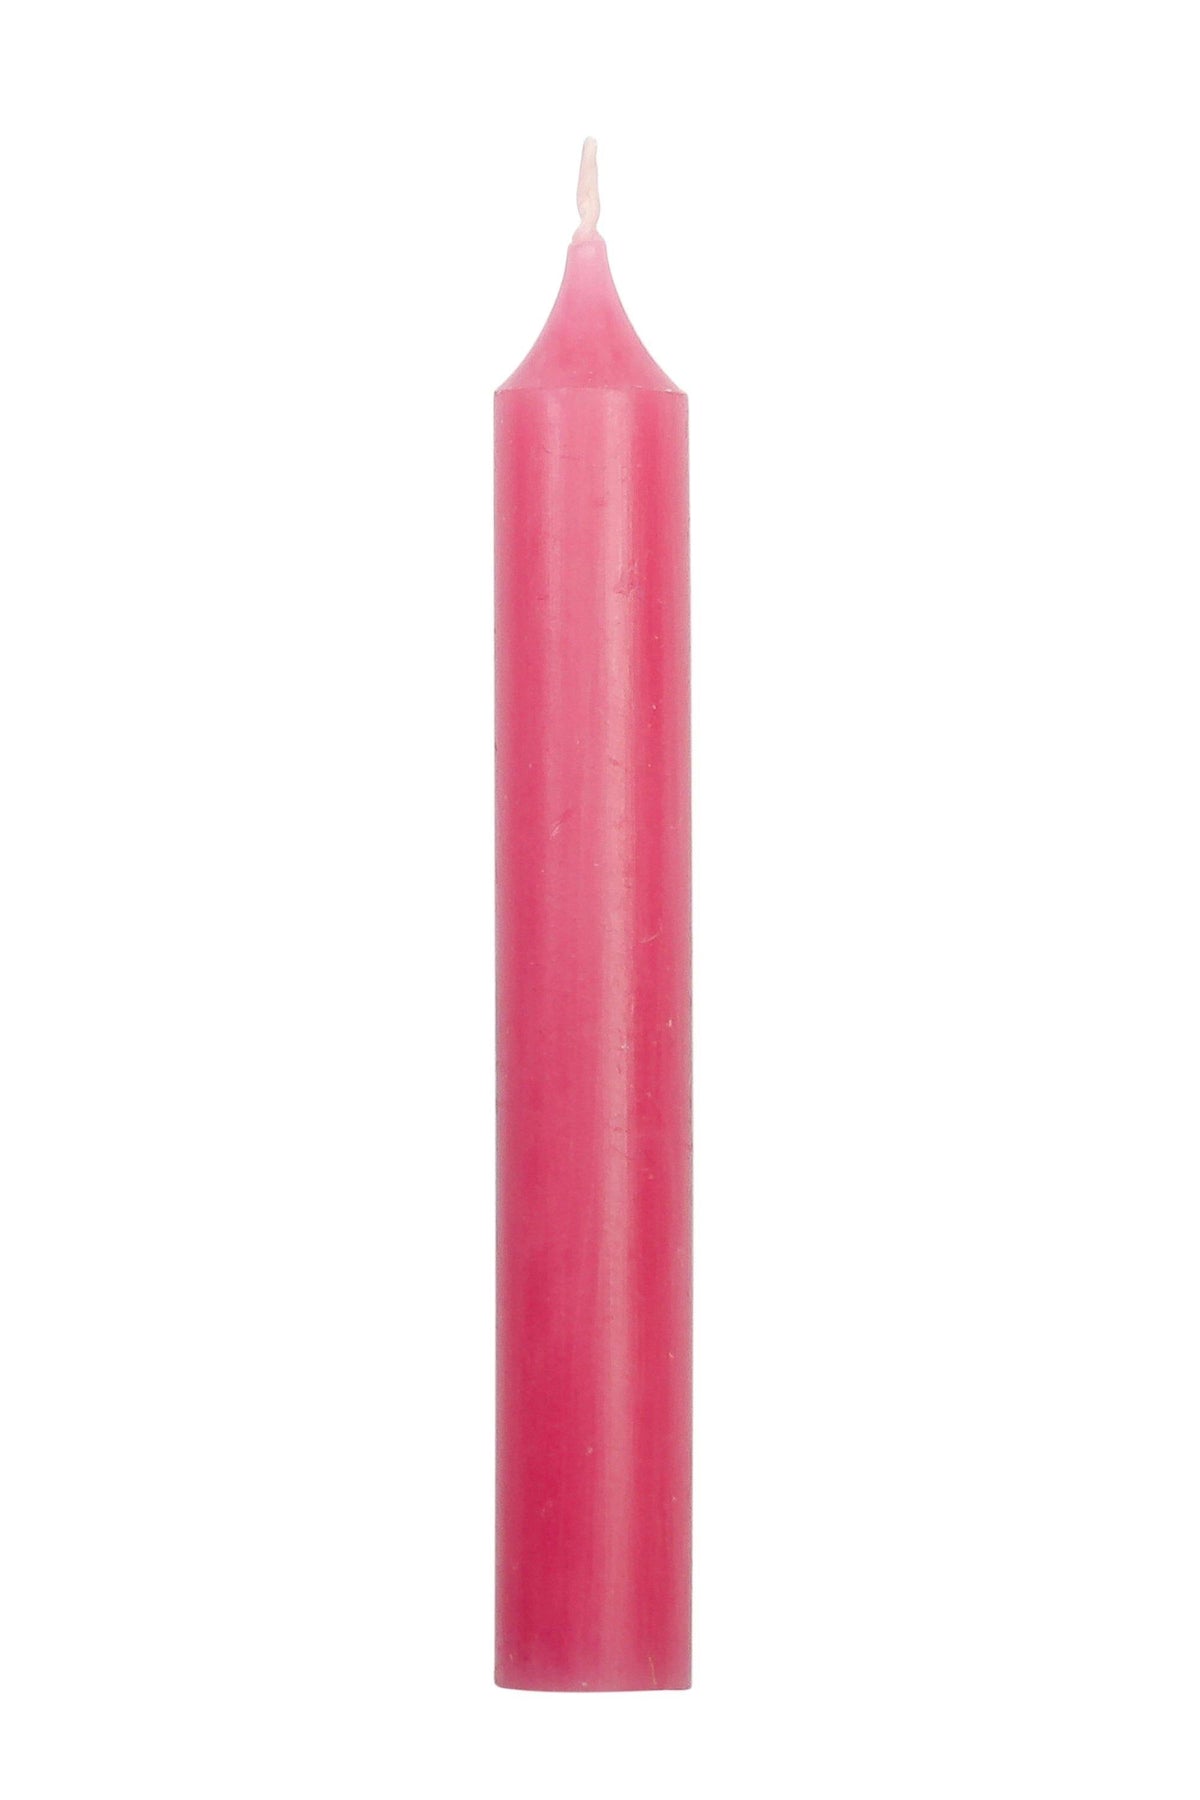 Kerze pink - www. kunstundspiel .de EINFARBIG (pink)